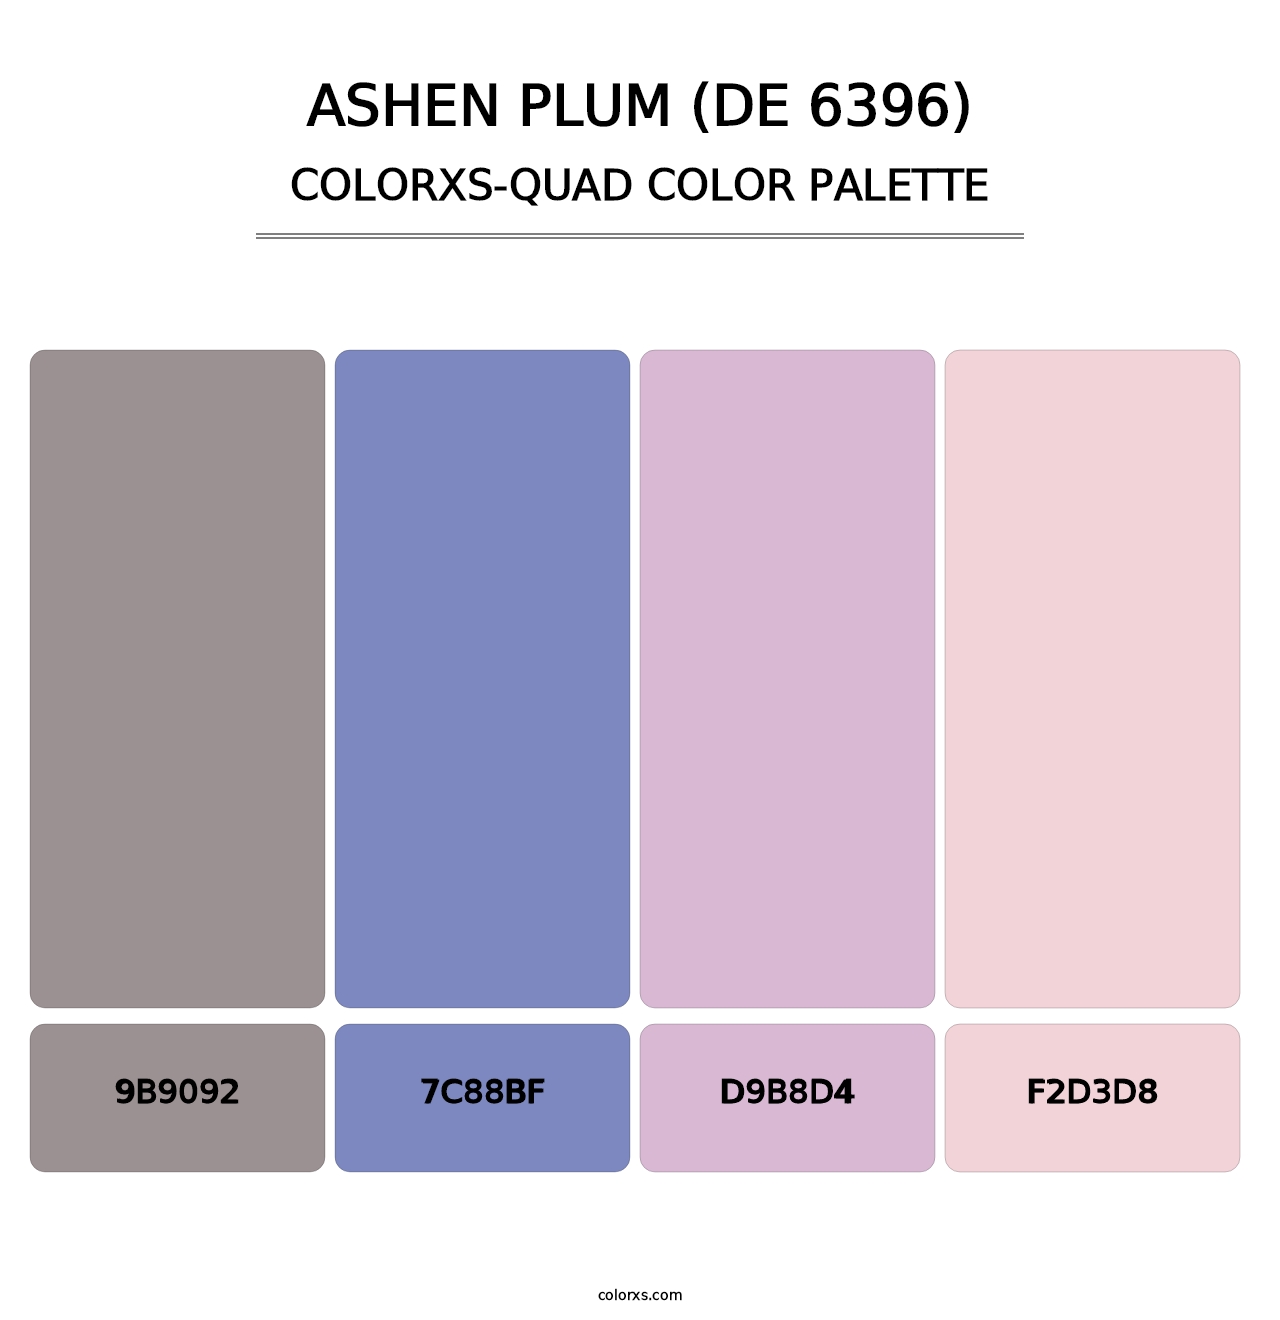 Ashen Plum (DE 6396) - Colorxs Quad Palette